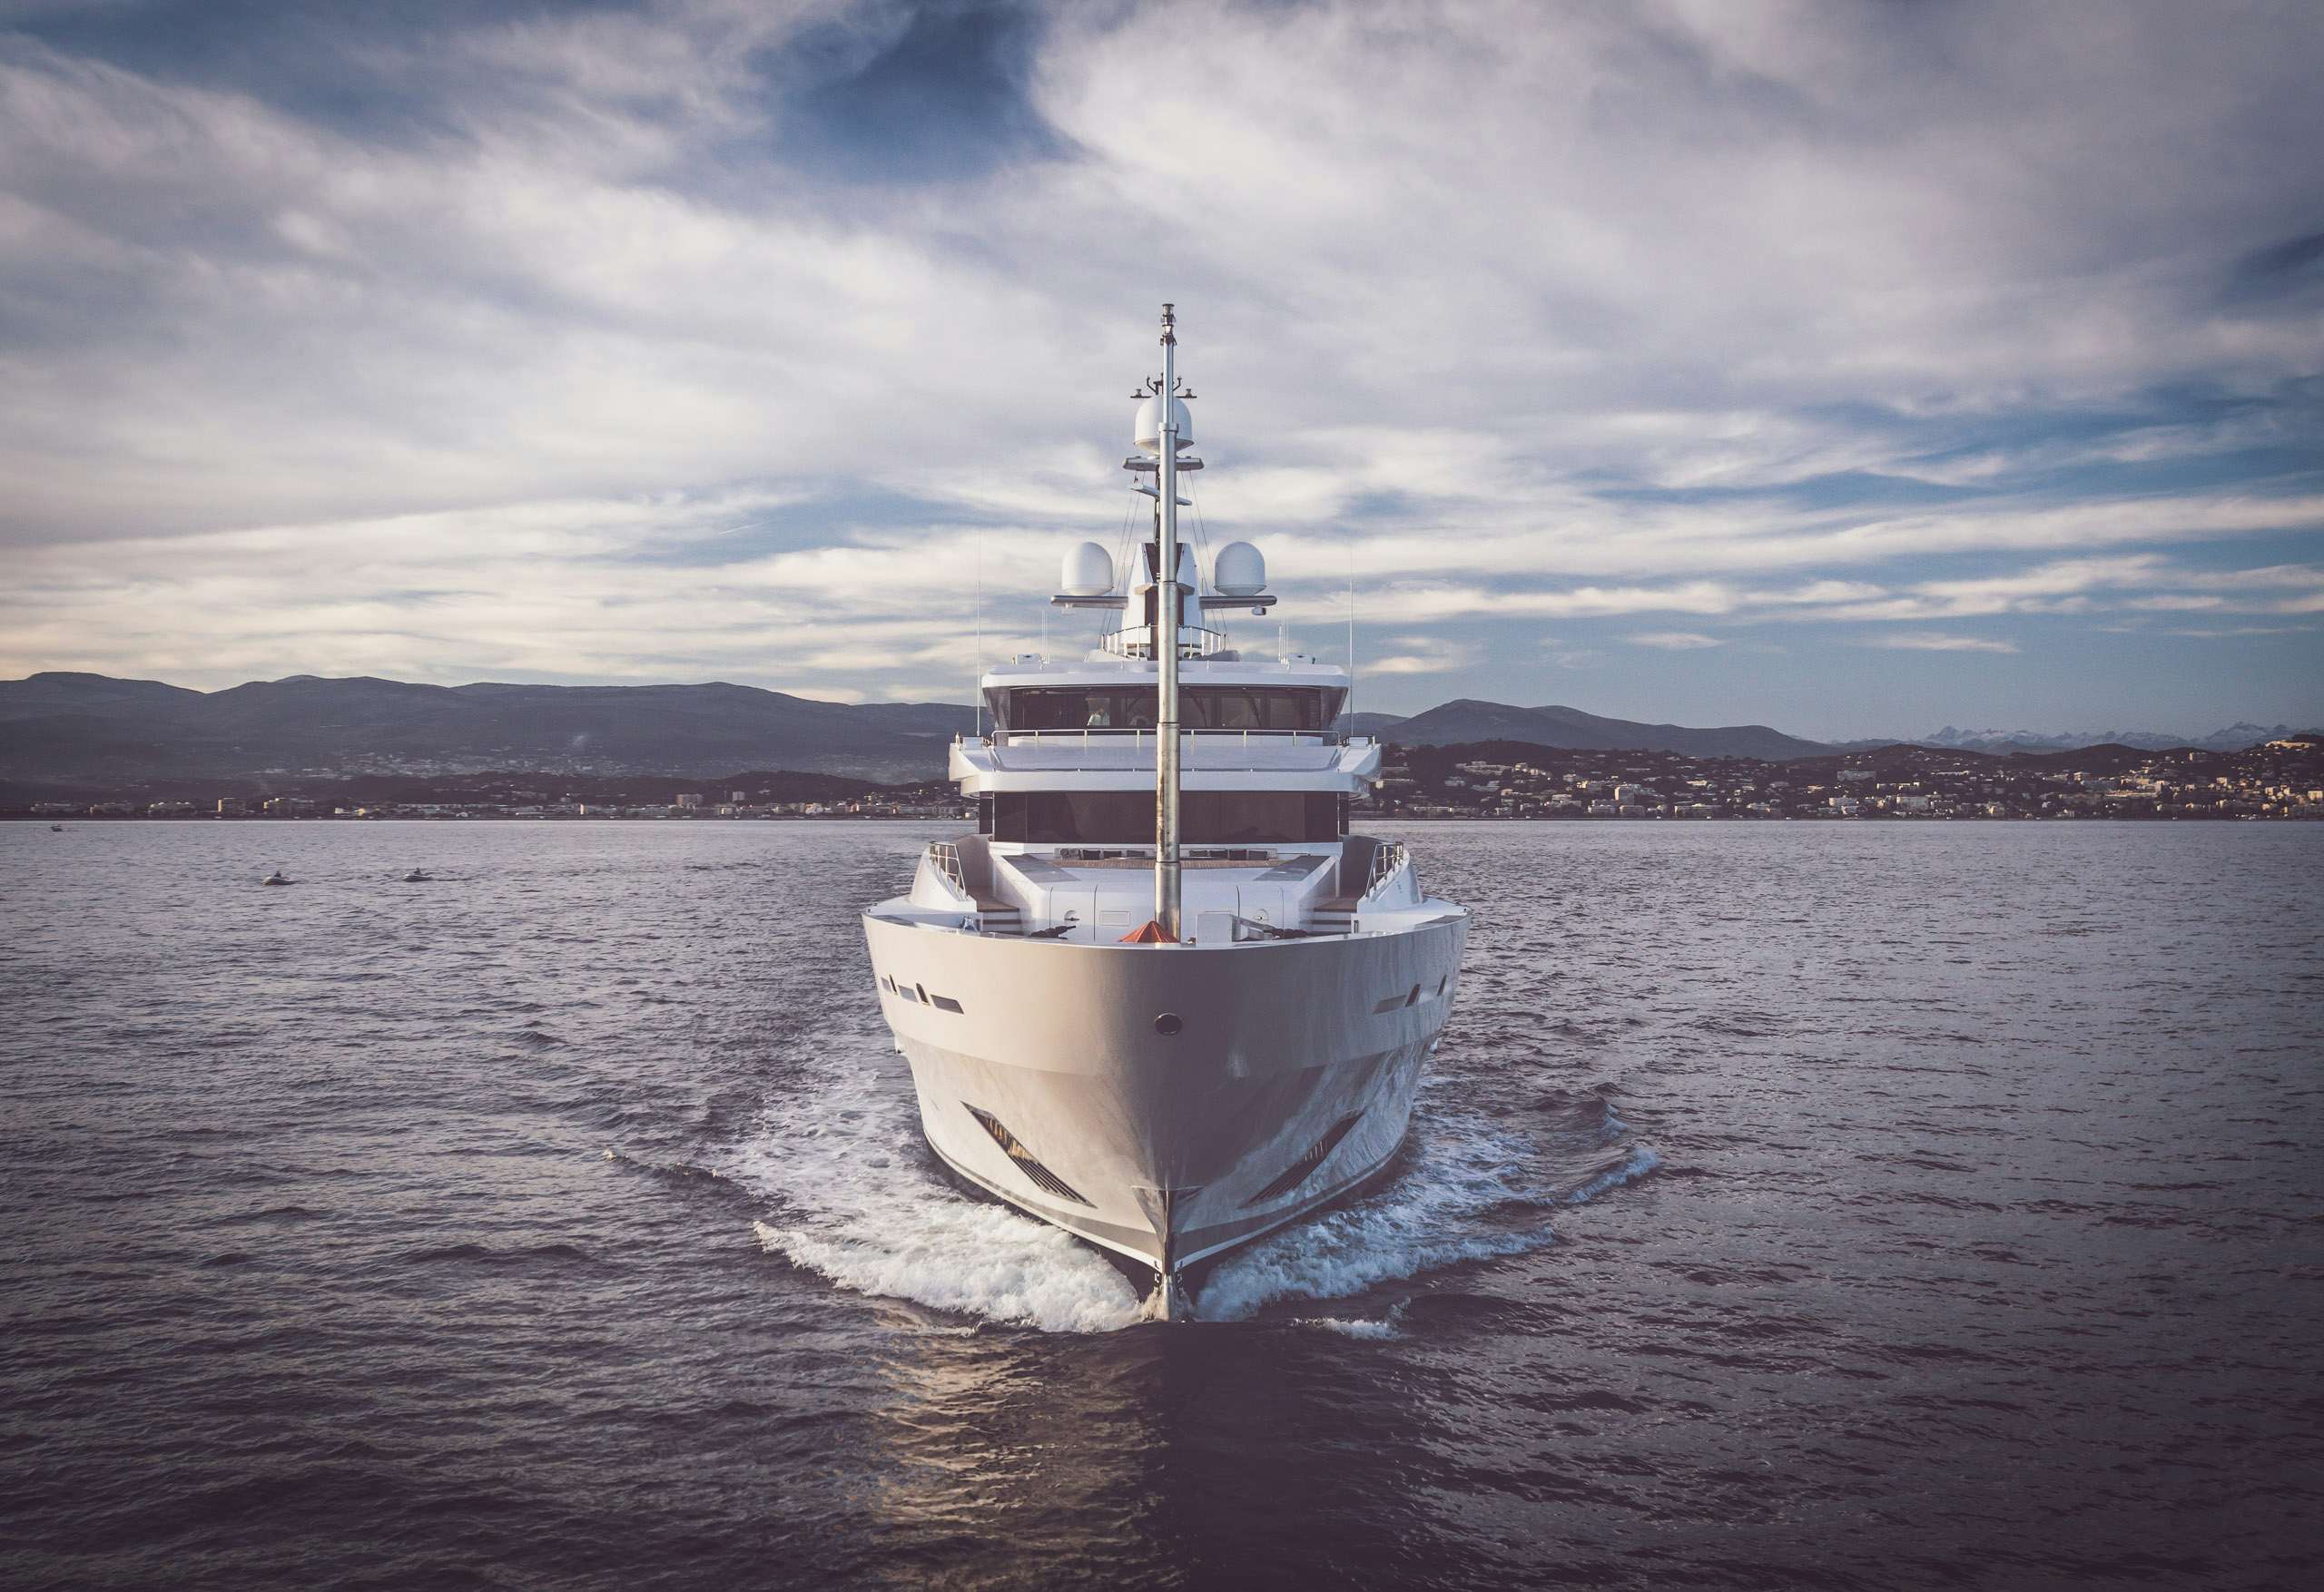 yacht broker charter